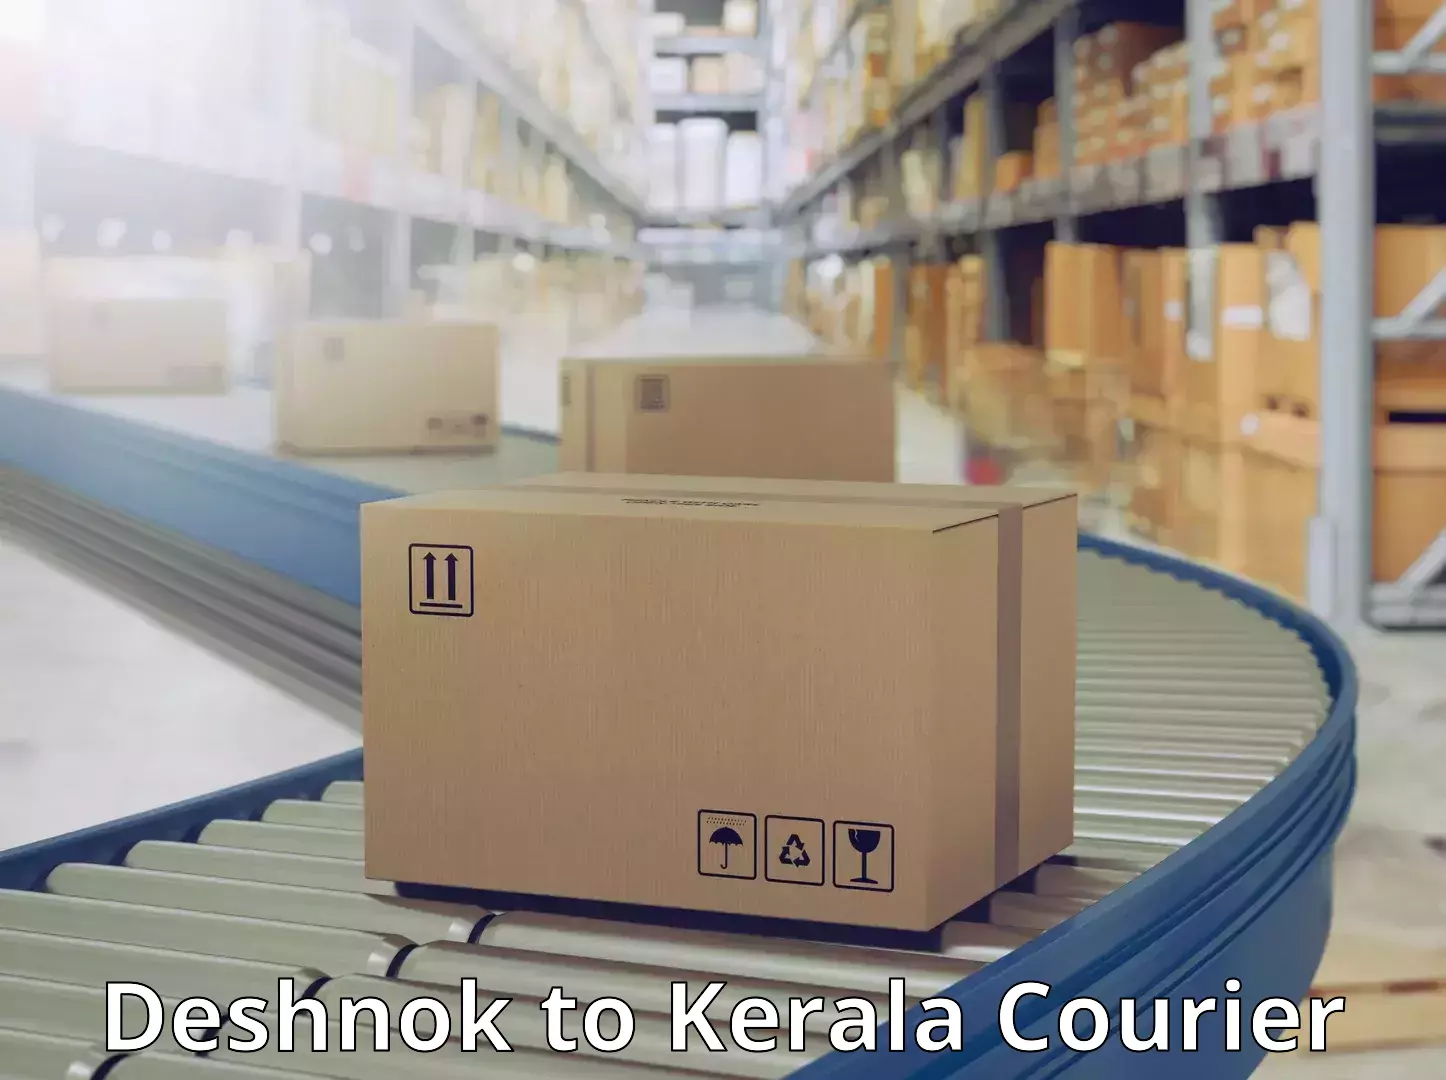 Modern courier technology Deshnok to Nenmara